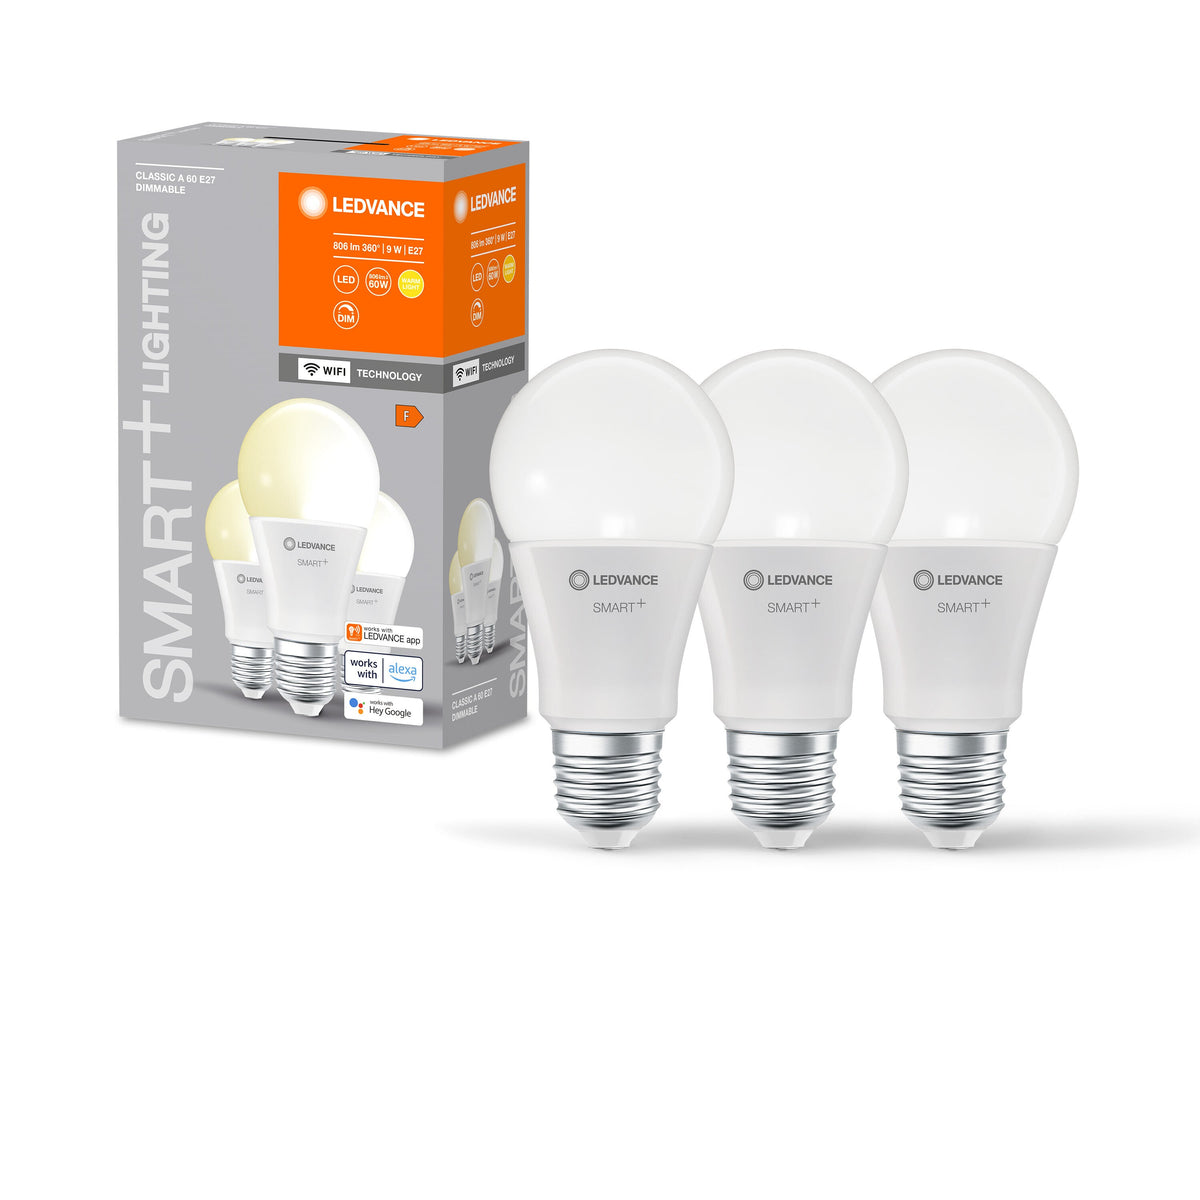 LEDVANCE Wifi SMART+ LED-Lampe, gefrostet, 9W, 806lm, 3er-Pack